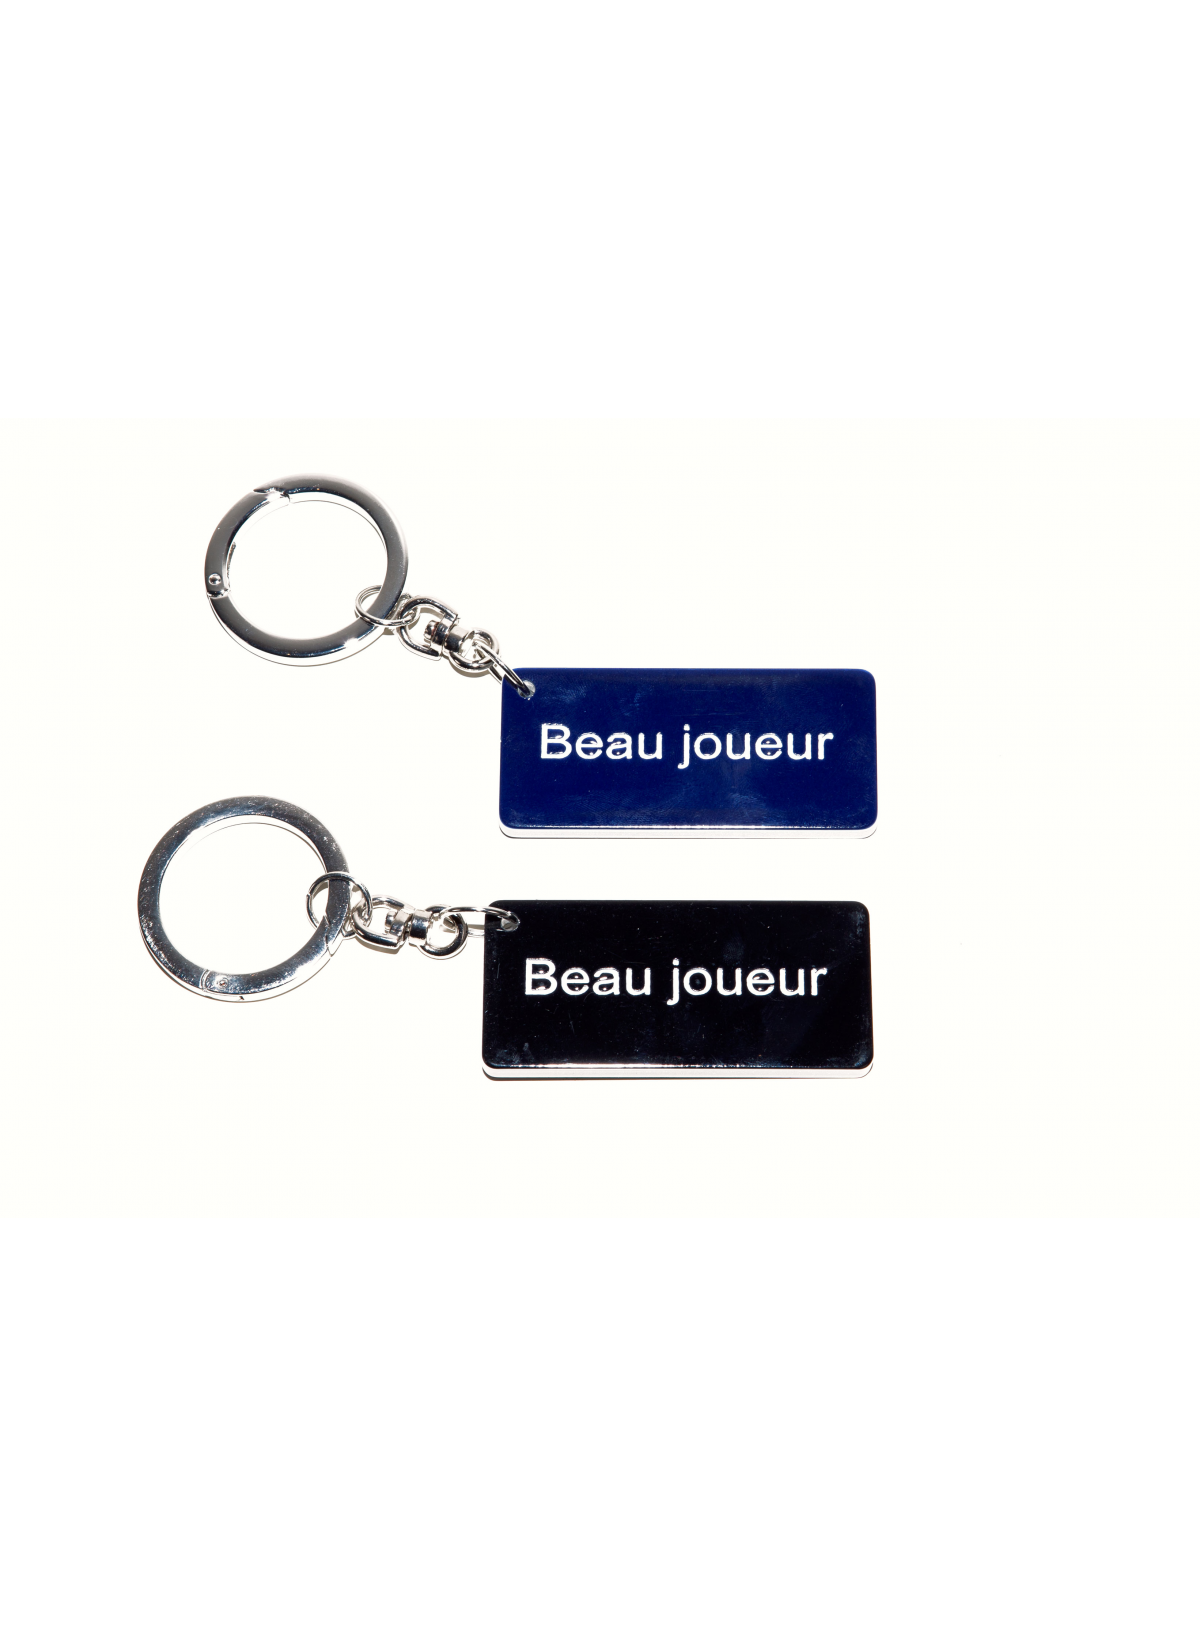 Porte Clefs "Beau Joueur"